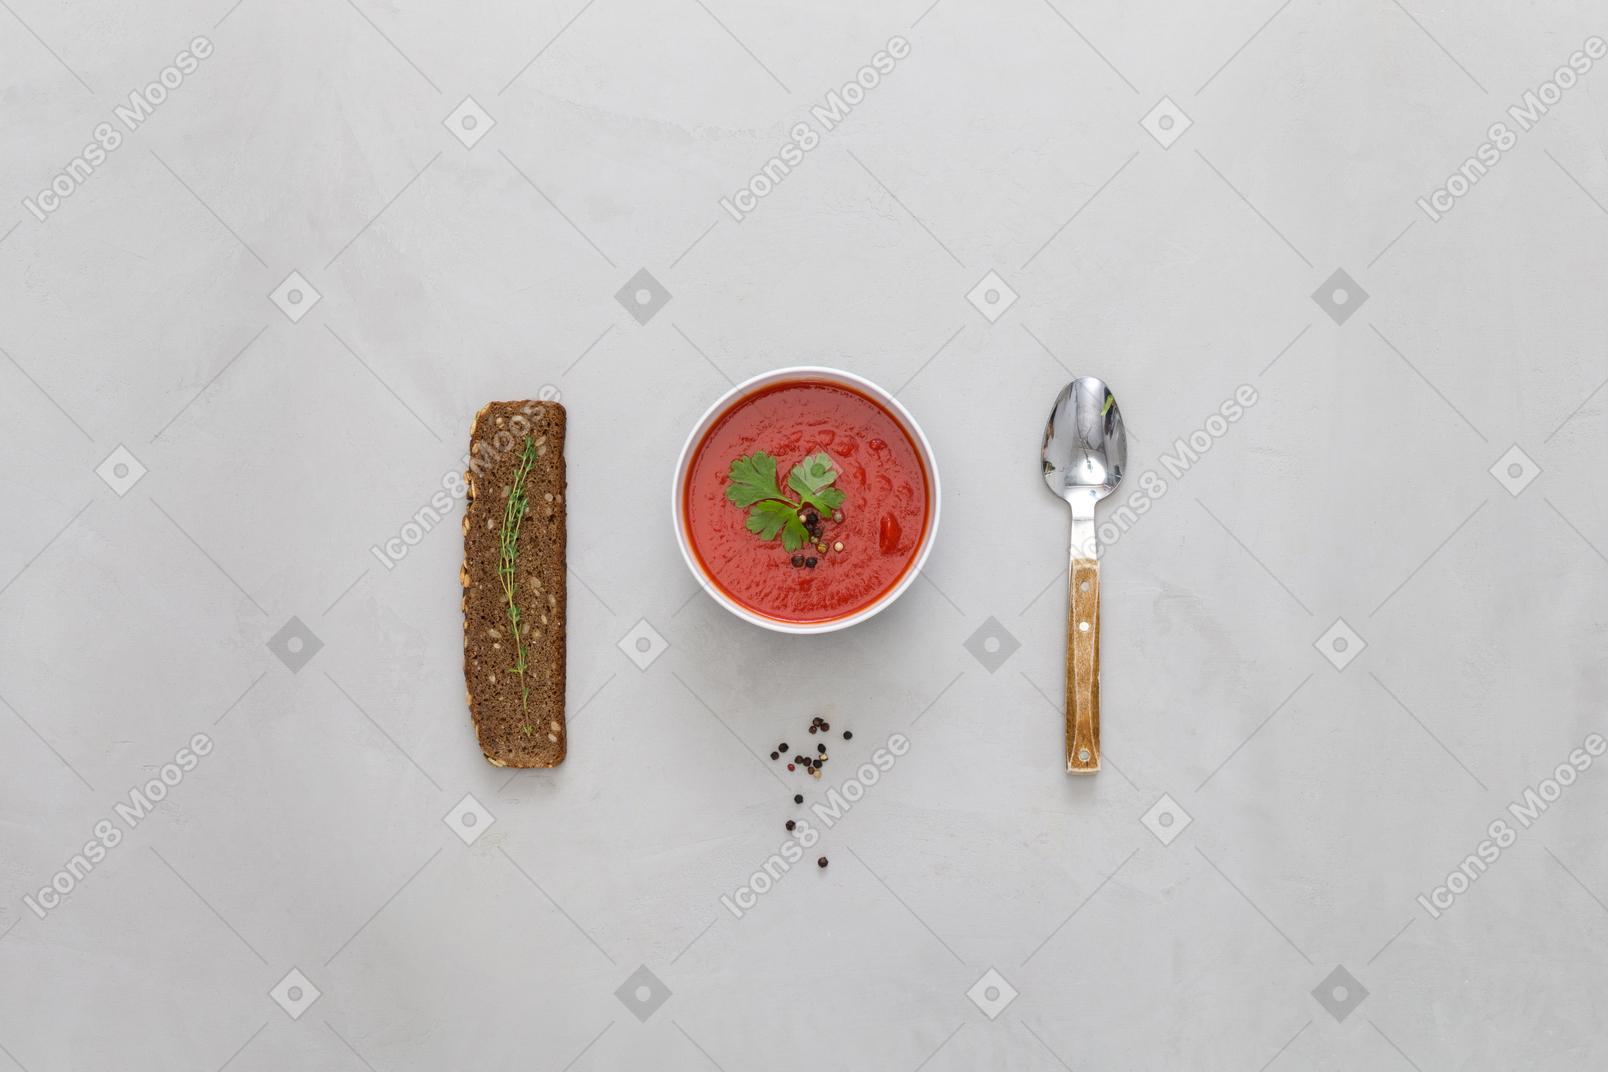 토마토 소스 그릇, 스낵 및 숟가락